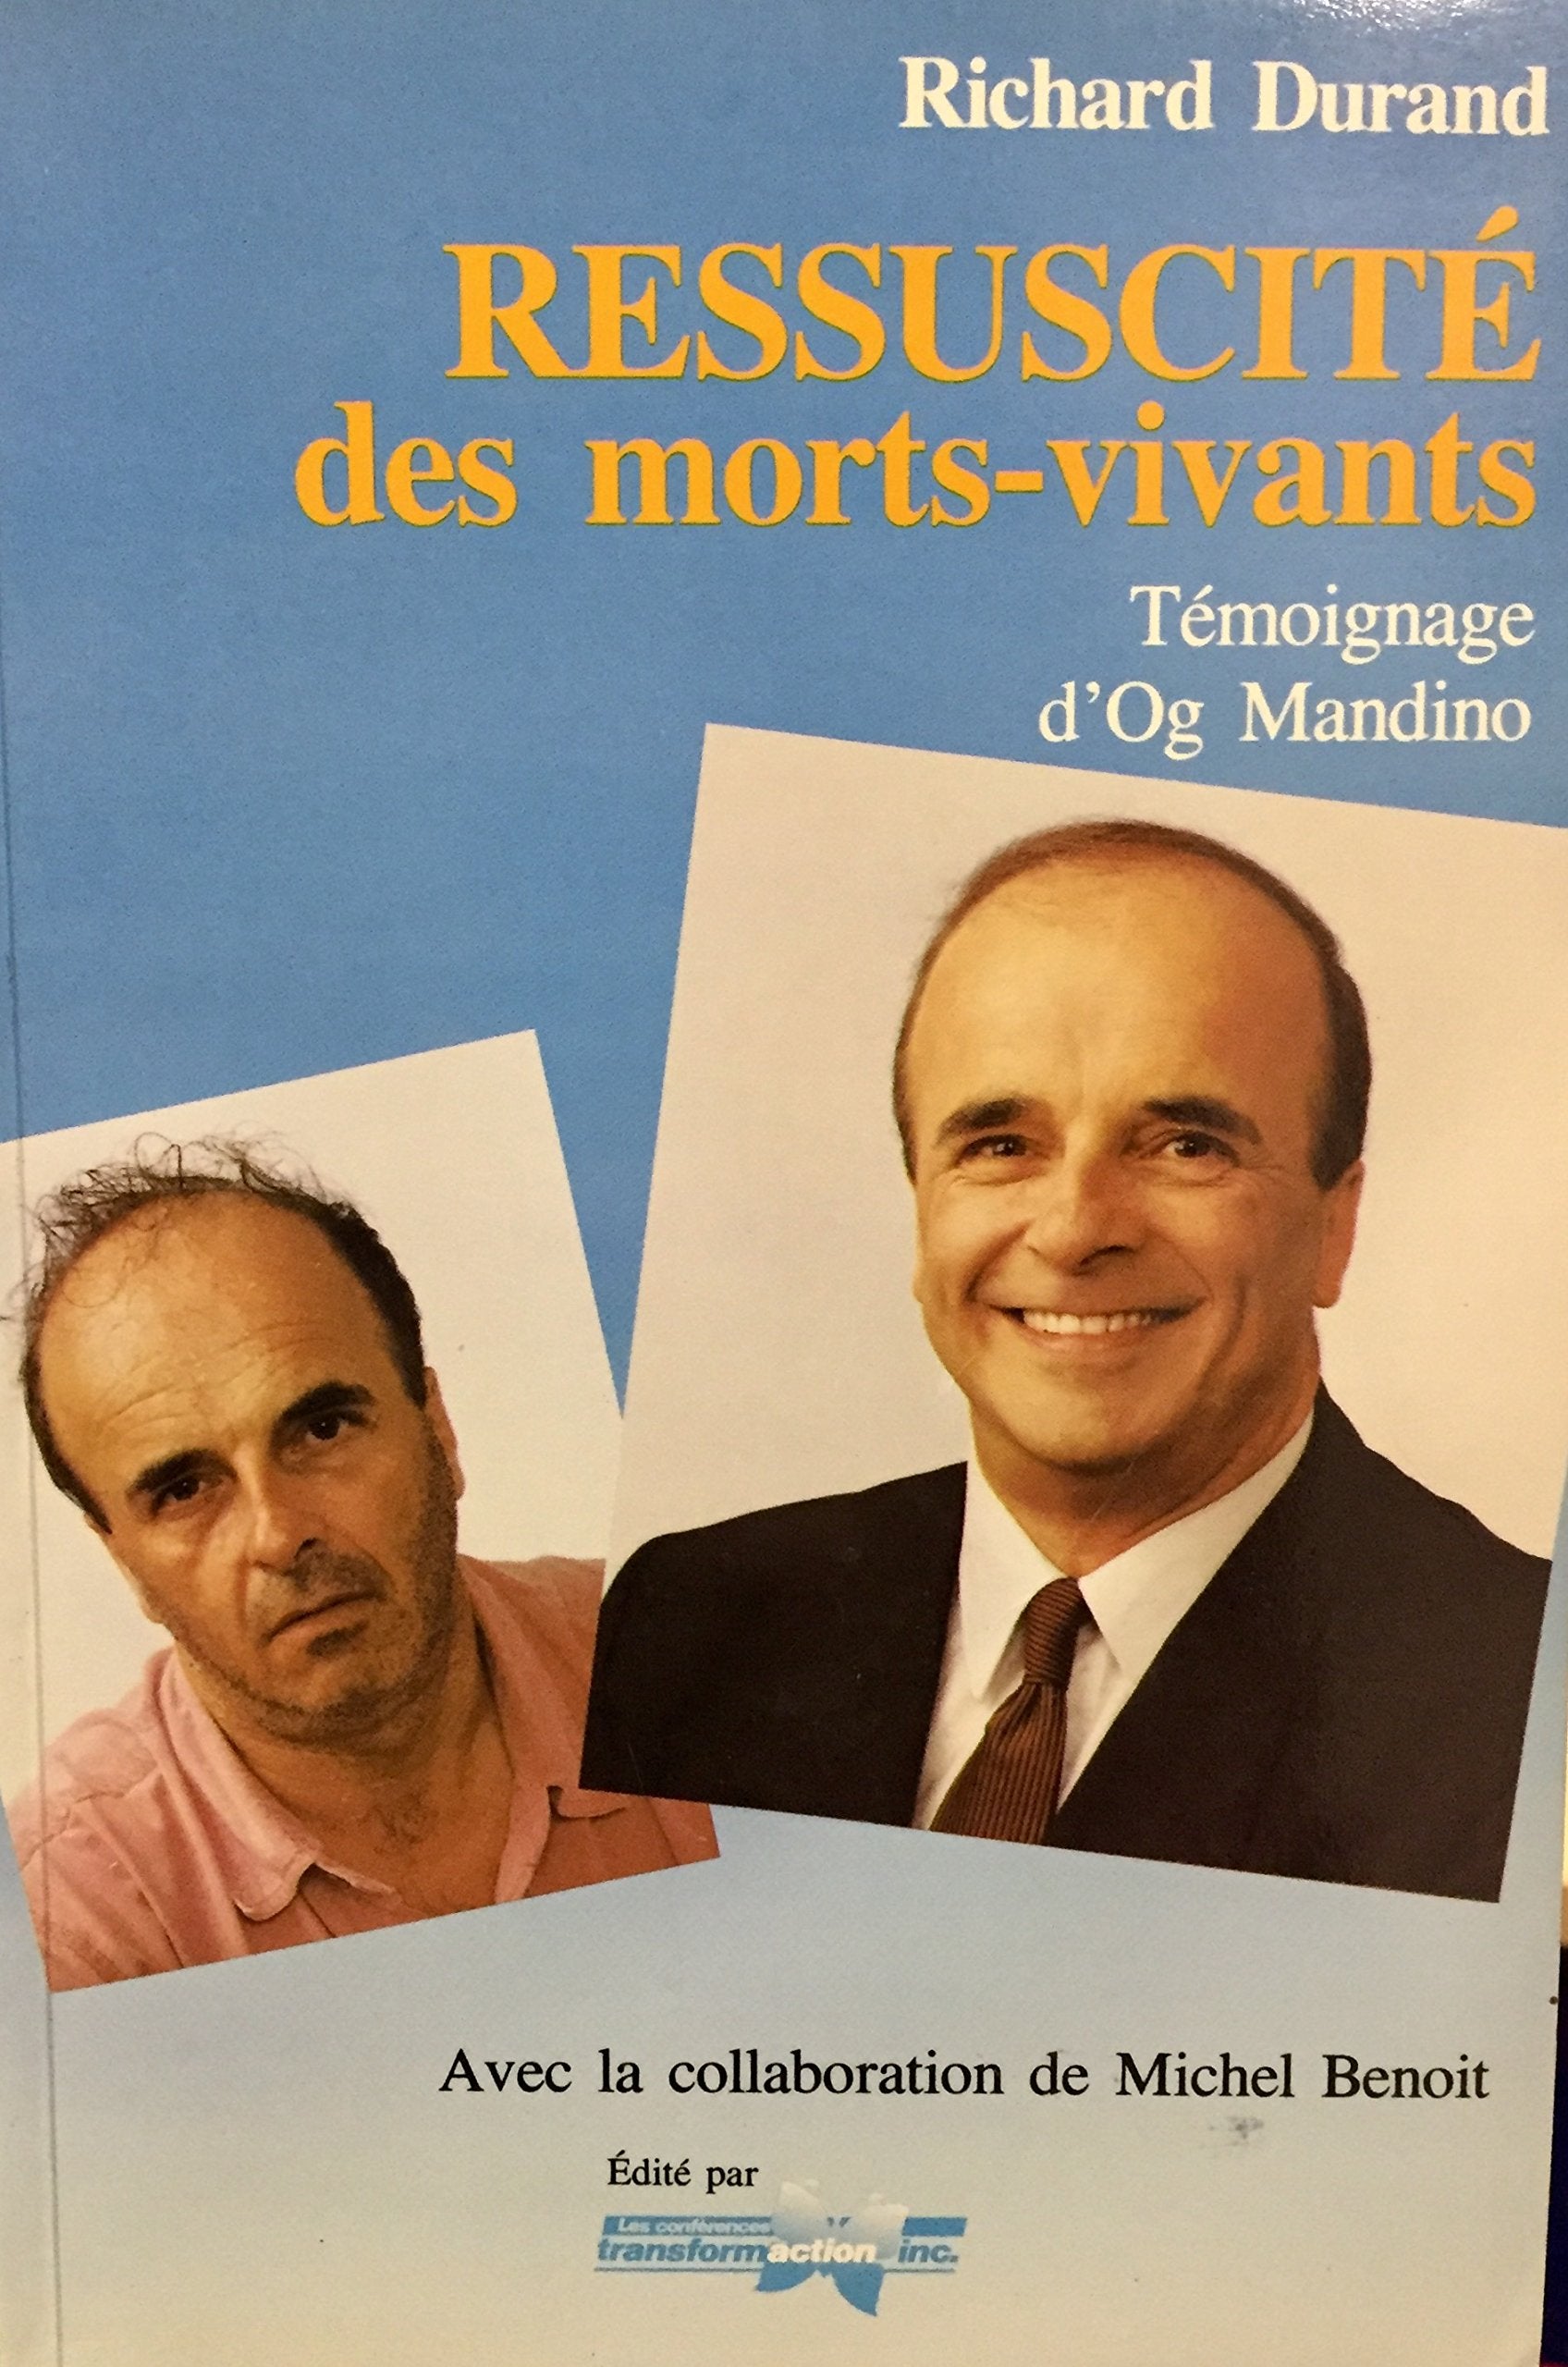 Livre ISBN 2980207004 Ressuscité des morts-vivants : témoignage d'Og Mandino (Richard Durand)